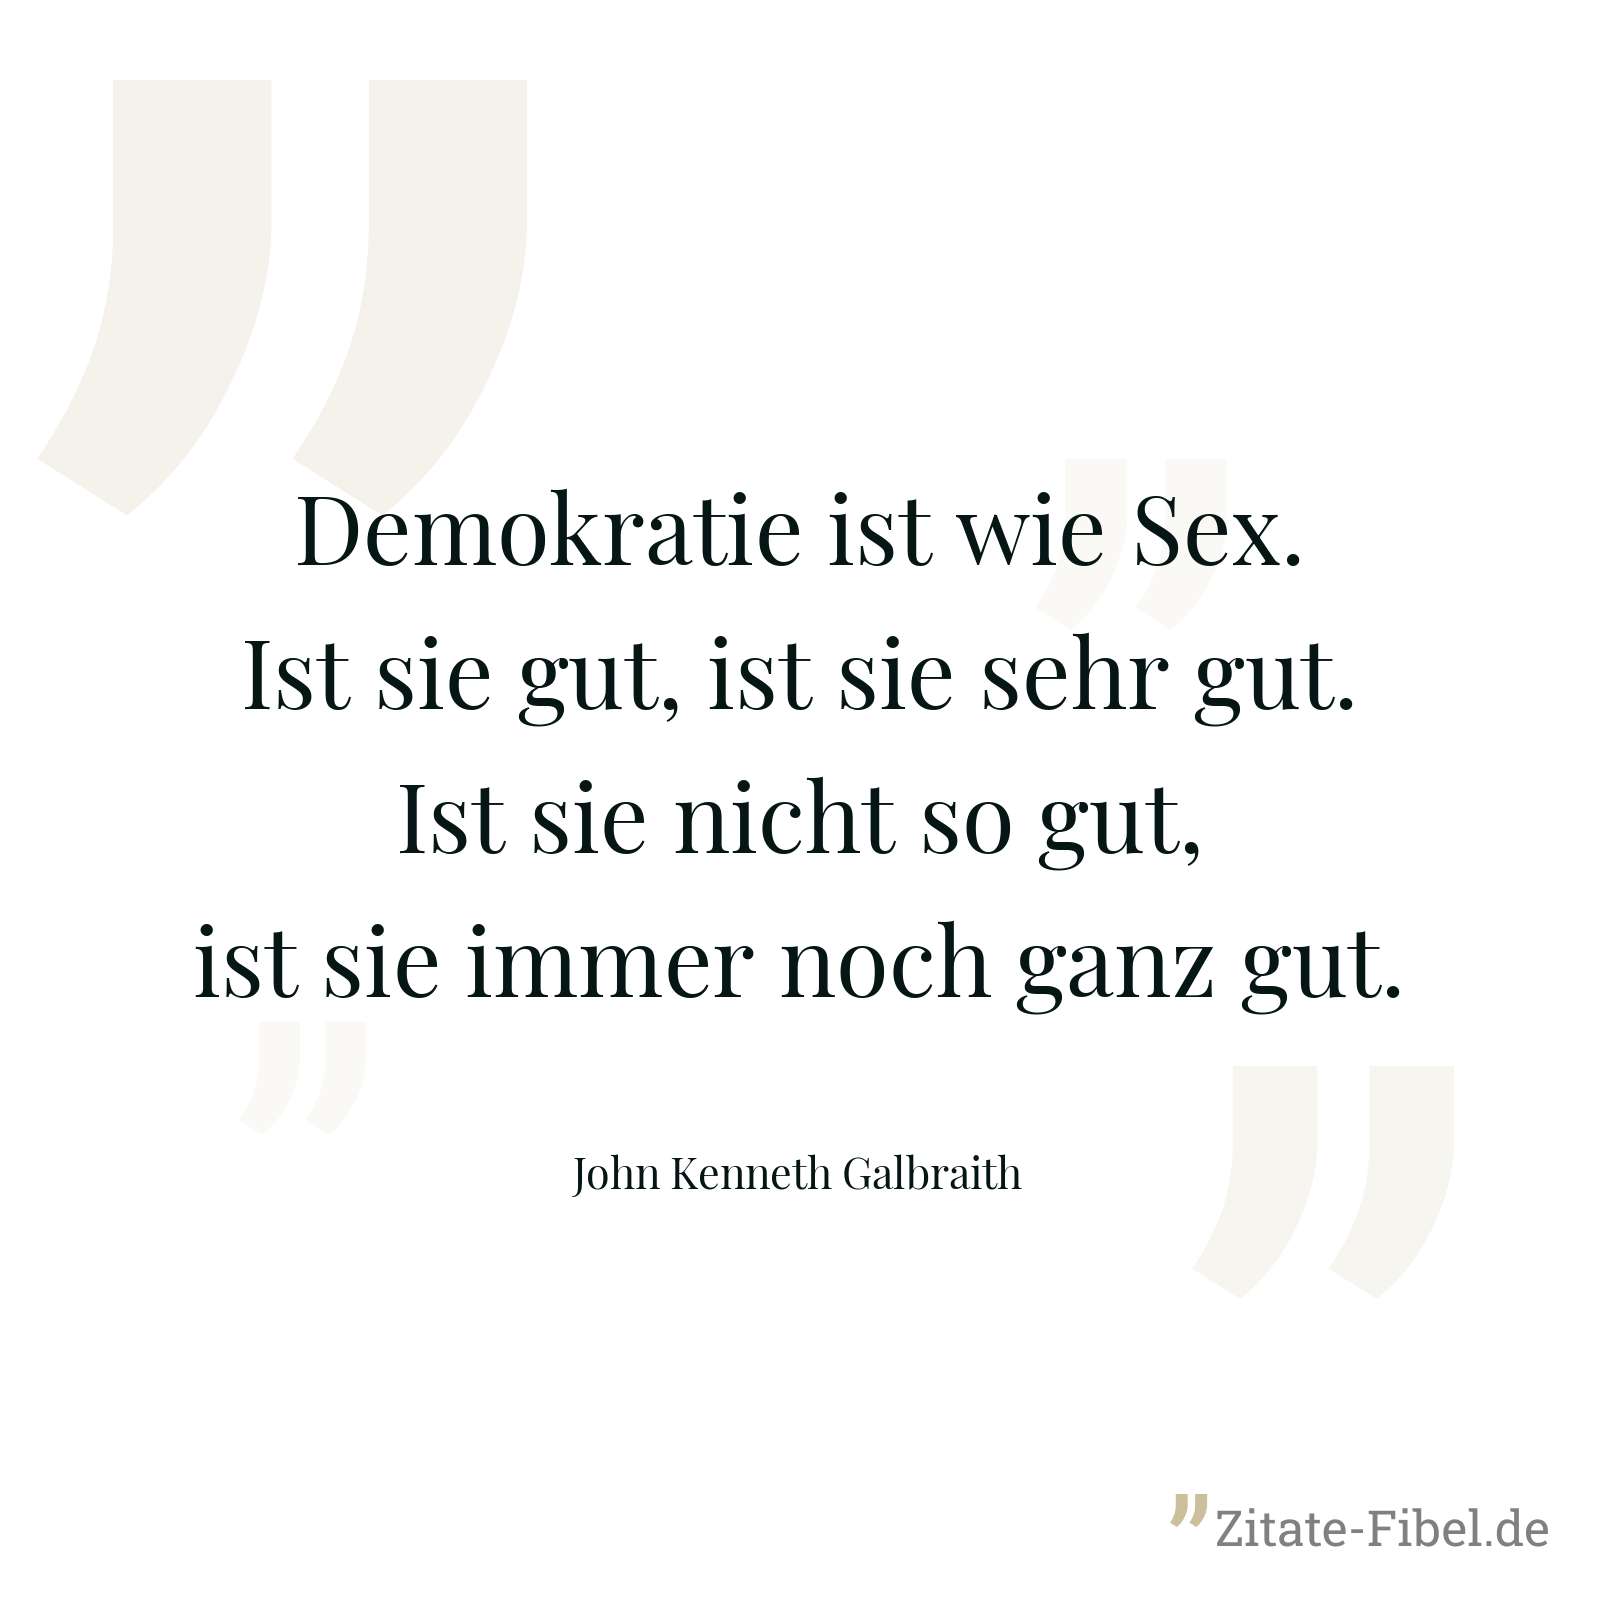 Demokratie ist wie Sex. Ist sie gut, ist sie sehr gut. Ist sie nicht so gut, ist sie immer noch ganz gut. - John Kenneth Galbraith